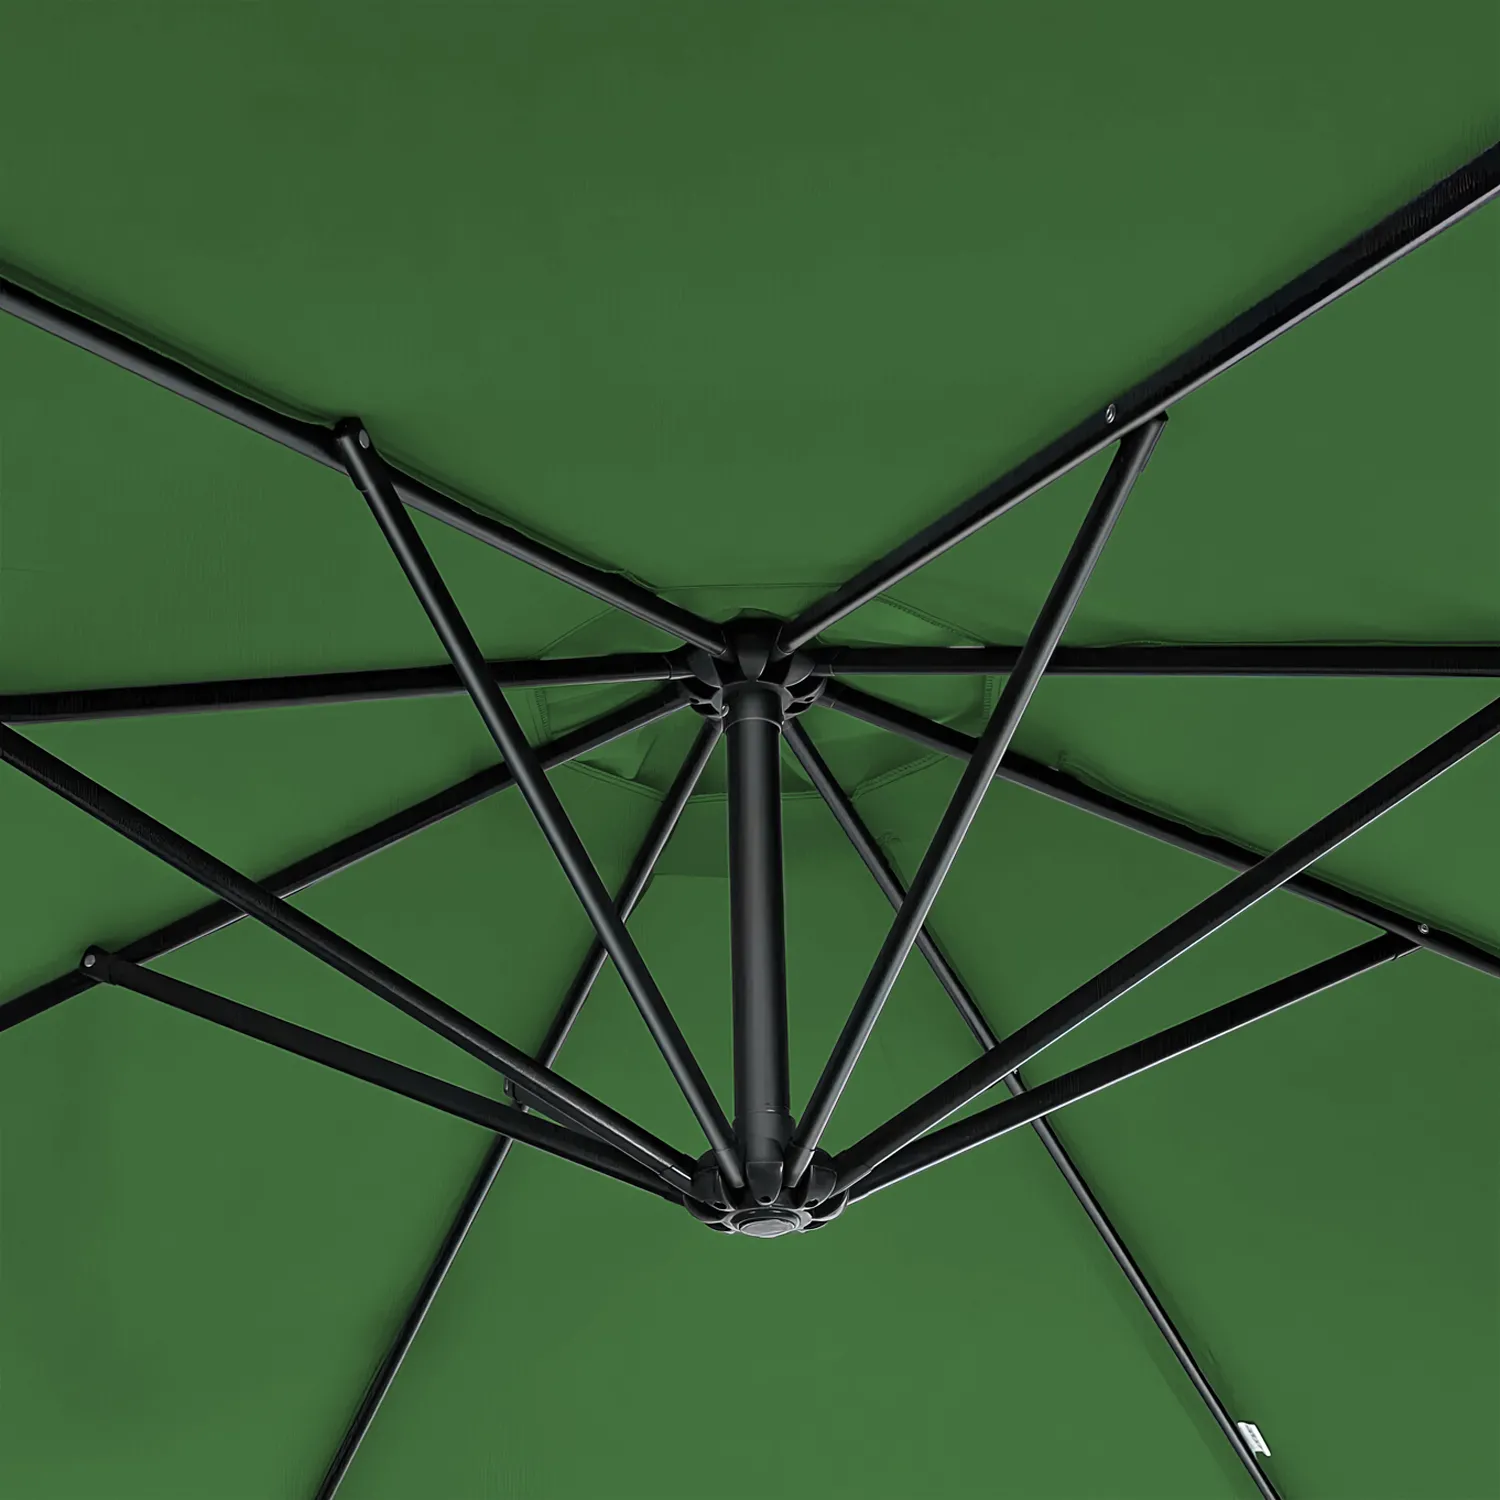 Umbrela de gradina Marbella (verde)